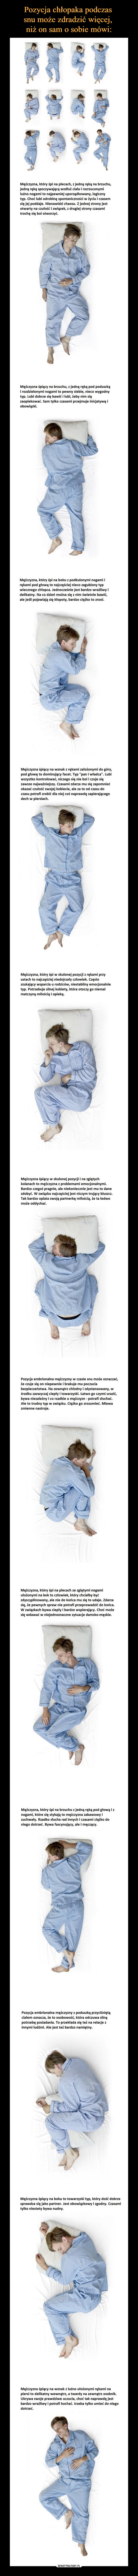 Pozycja chłopaka podczas 
snu może zdradzić więcej, 
niż on sam o sobie mówi: